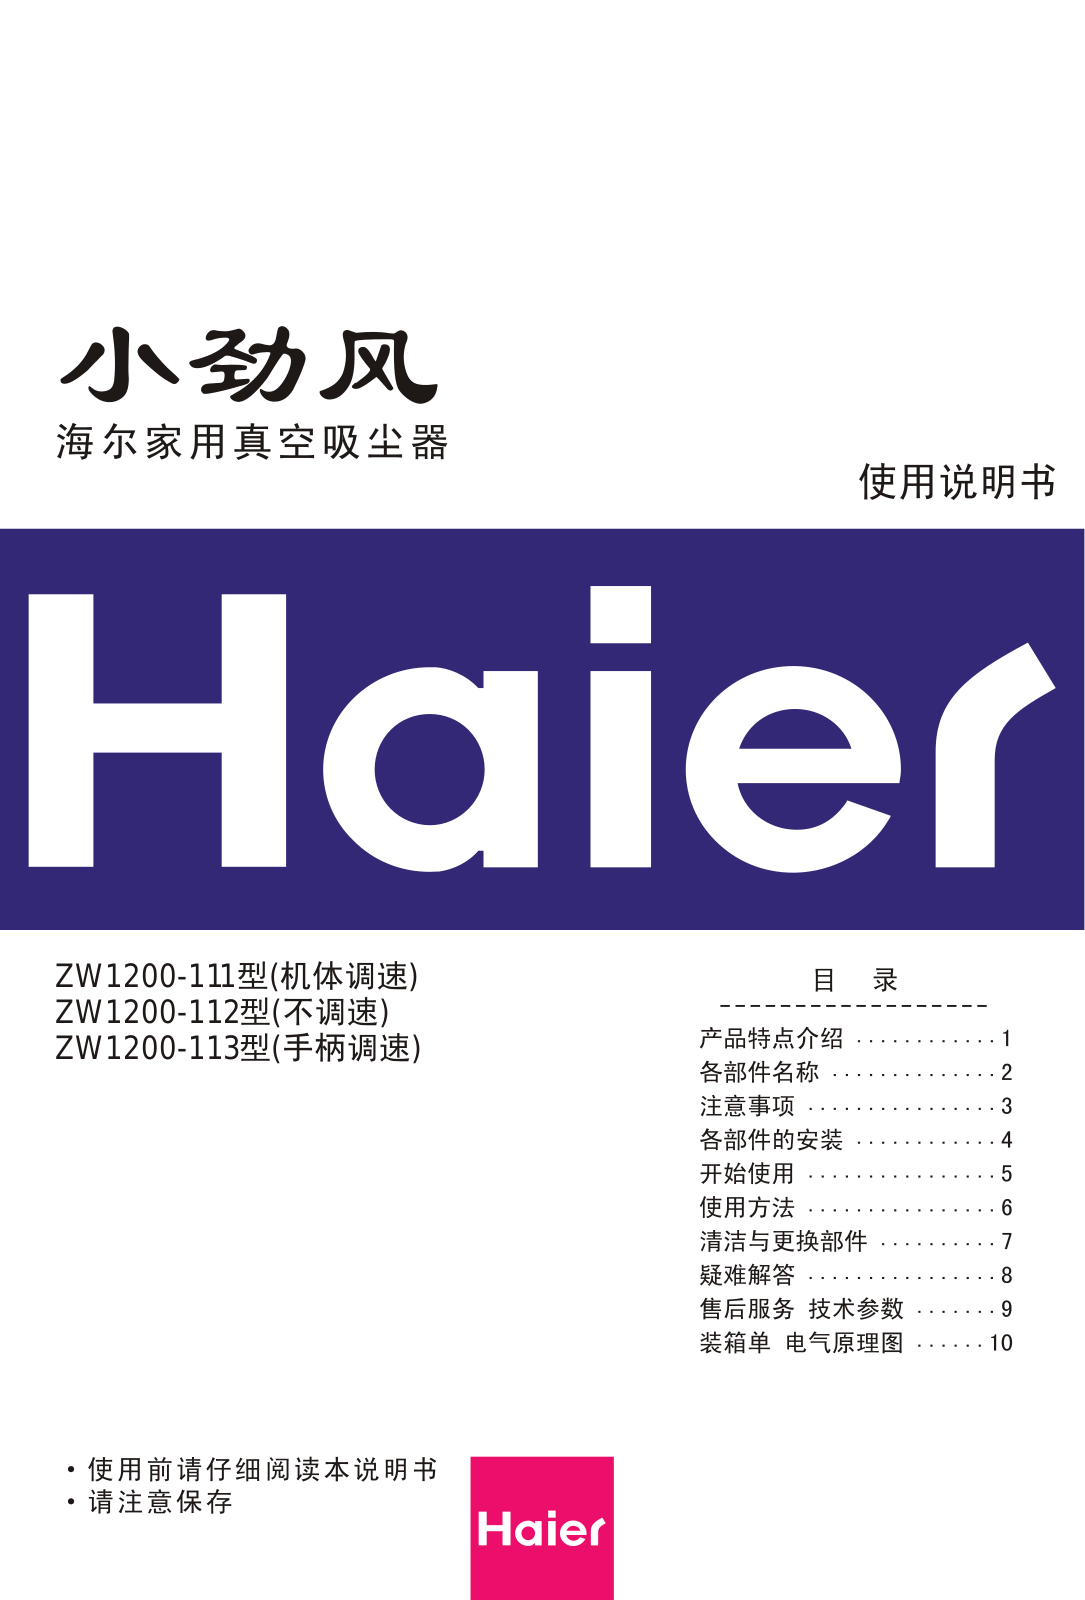 Haier ZW1200-111, ZW1200-112, ZW1200-113 User Manual